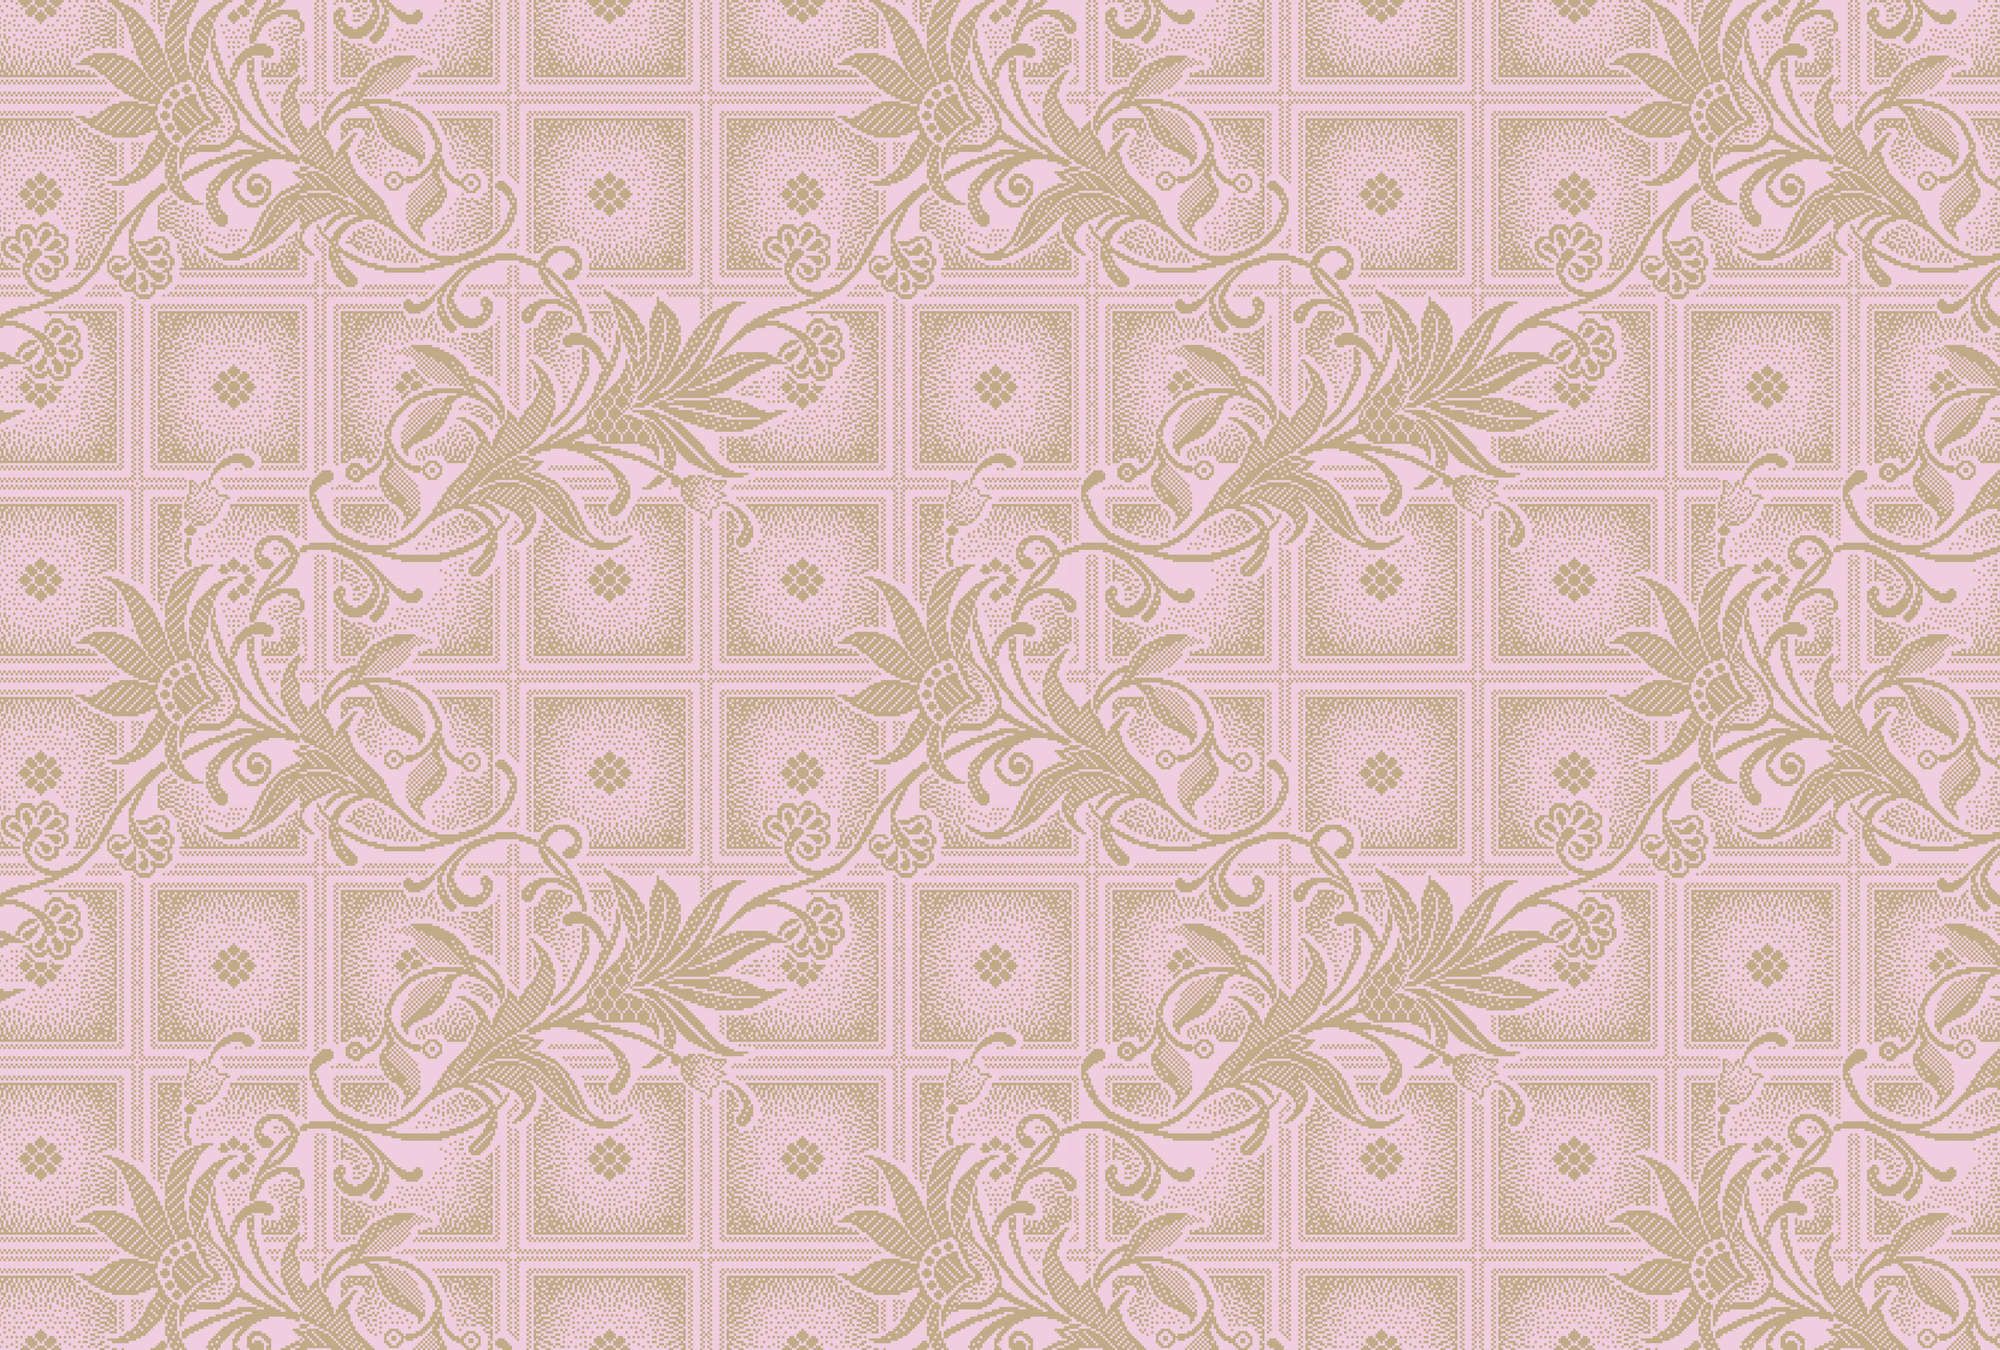             Digital behang »vivian« - Pixelachtige vierkantjes met bloemen - Roze | Gladde, licht parelmoerglanzende vliesstof
        